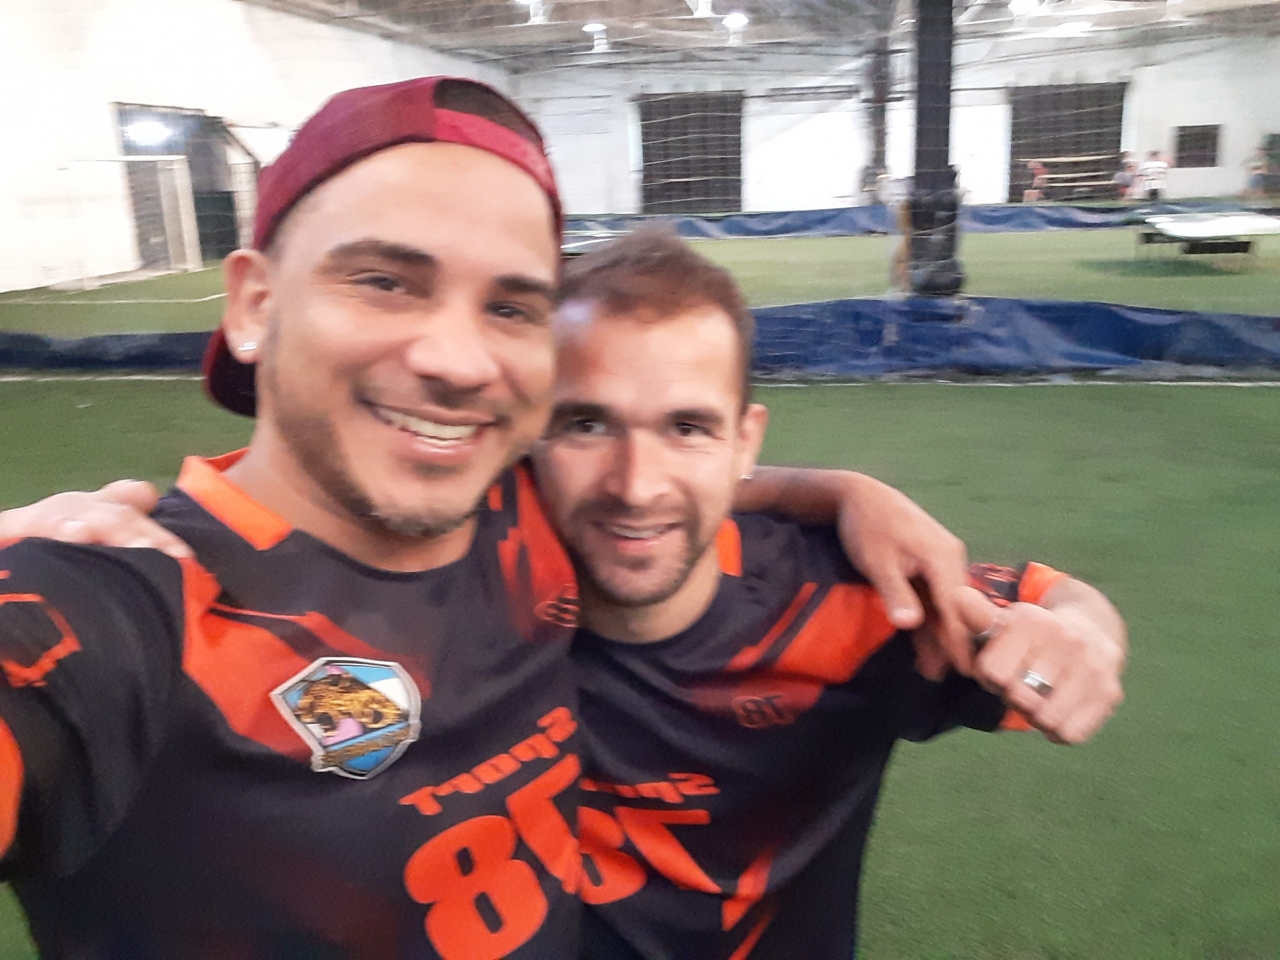 Sin título 26-08-2019 - Me gusta el deporte como el fútbol esta es una foto.con un compañero después de un partido 